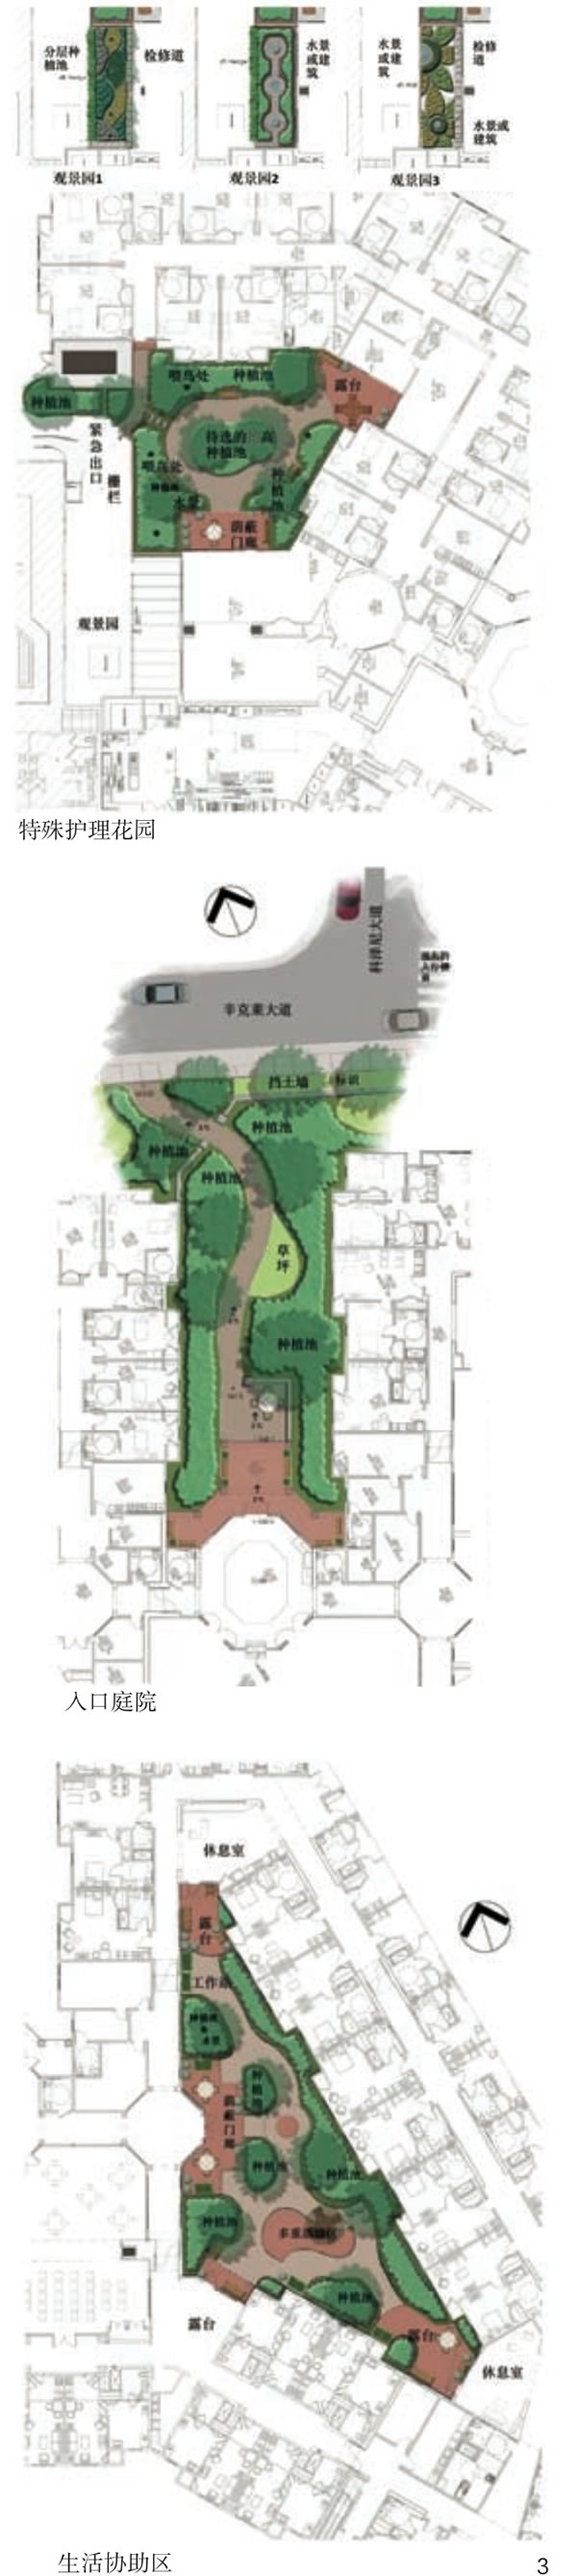 图3 克拉伍德的格伦麦尔园区的3块户外活动场地设计平面图